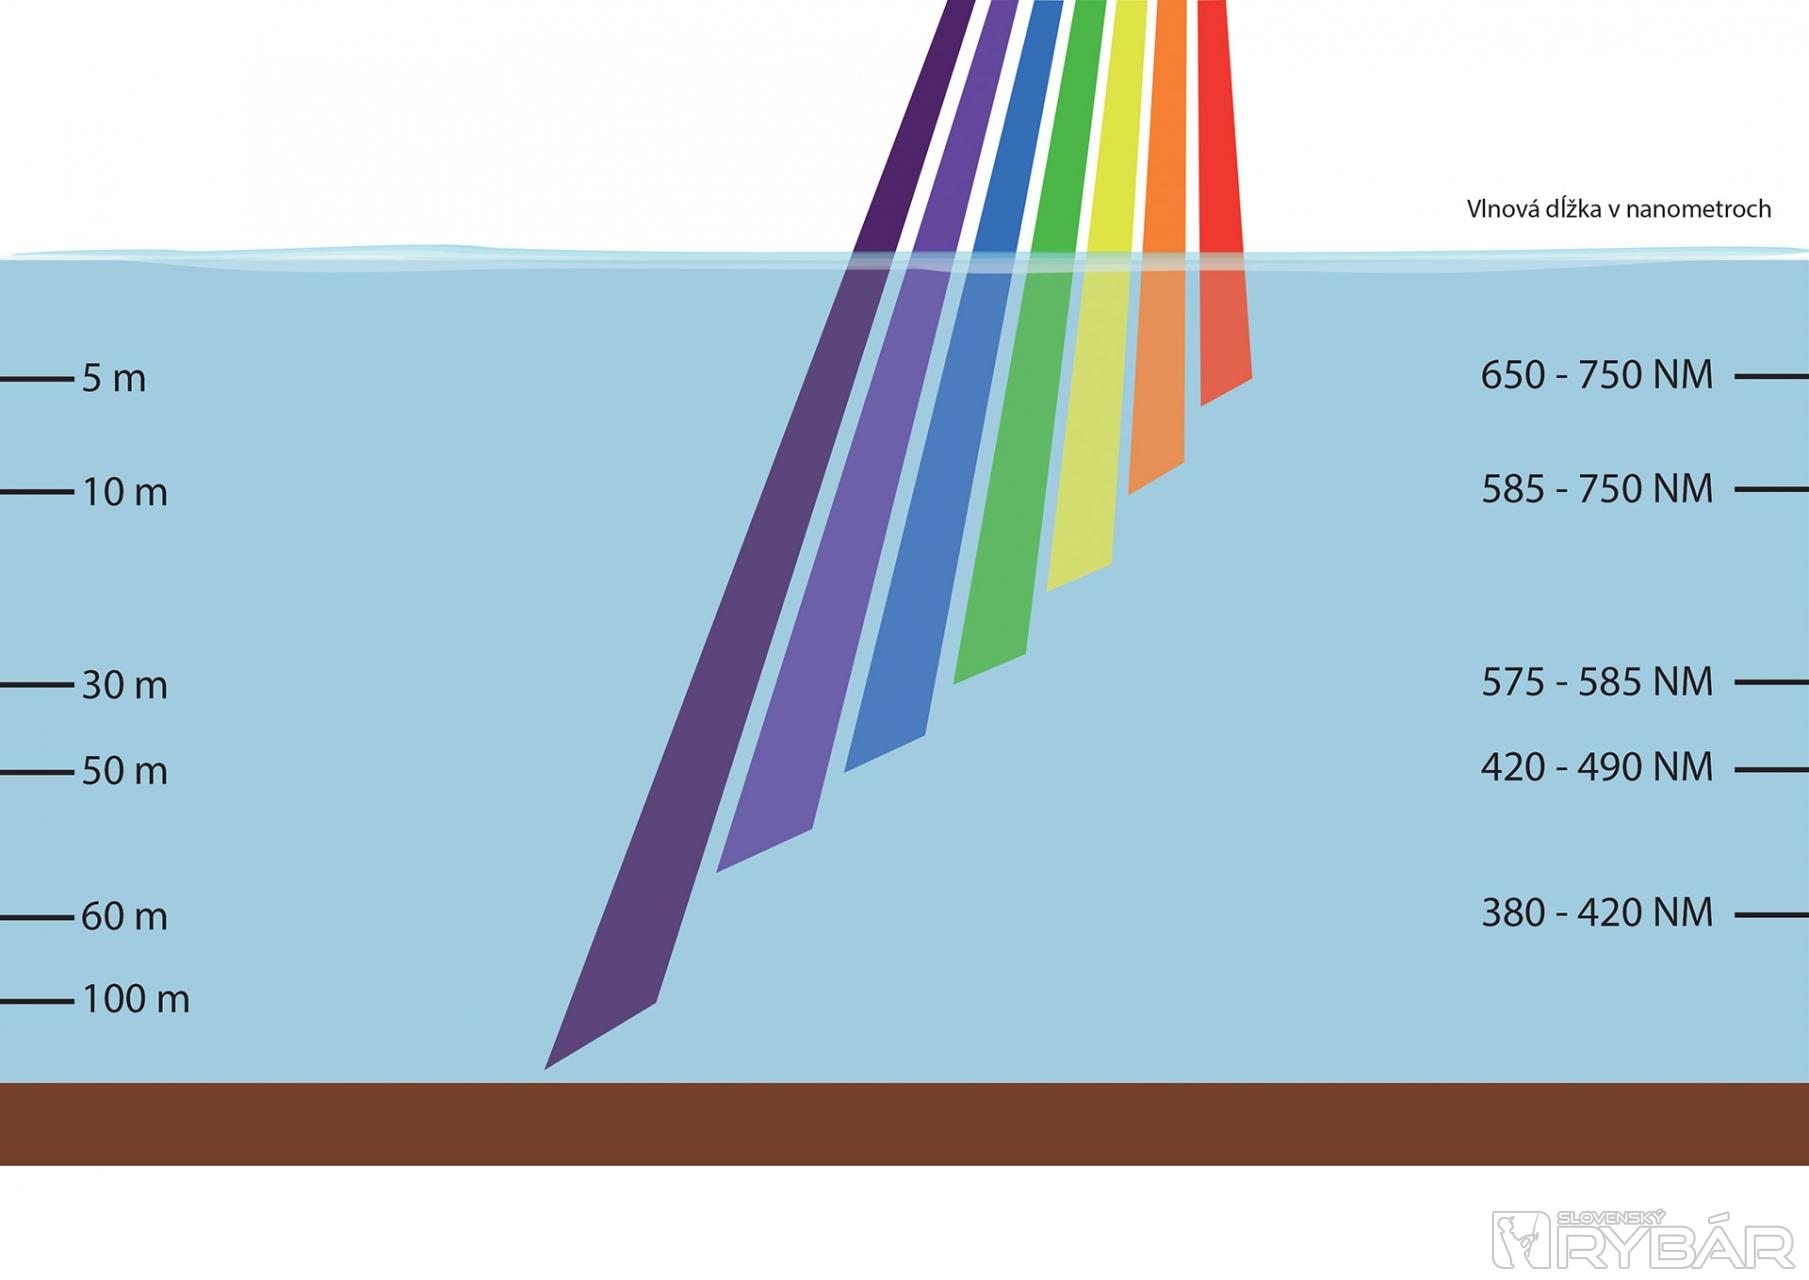 Graf nám ukazuje ako zaniká farebné spektrum slnečného žiarenia v závislosti od hĺbky vody.  Všimnite si, že červená farba zaniká už pri cca 7 metroch, ako prvá.  UV nástrahy nemenia svoju farbu ani v hĺbke väčšej ako 100 m.